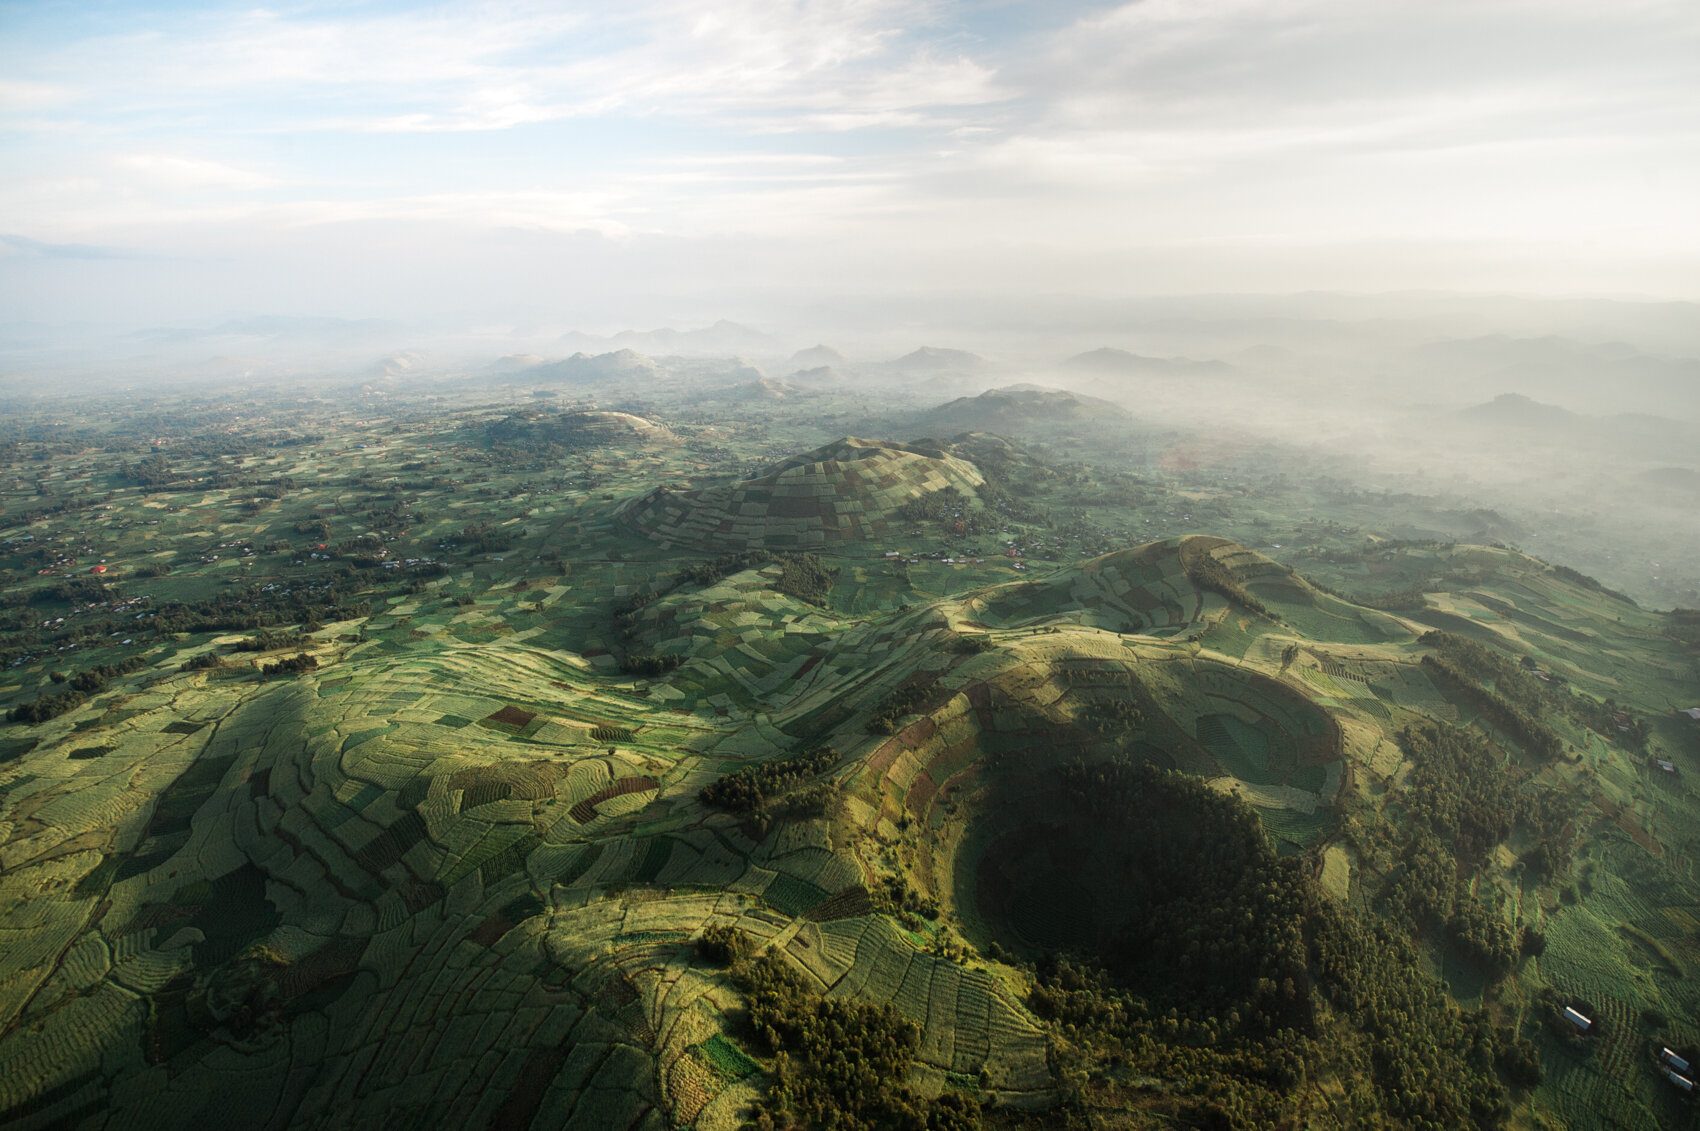  Rwanda-Uganda Border Hills 